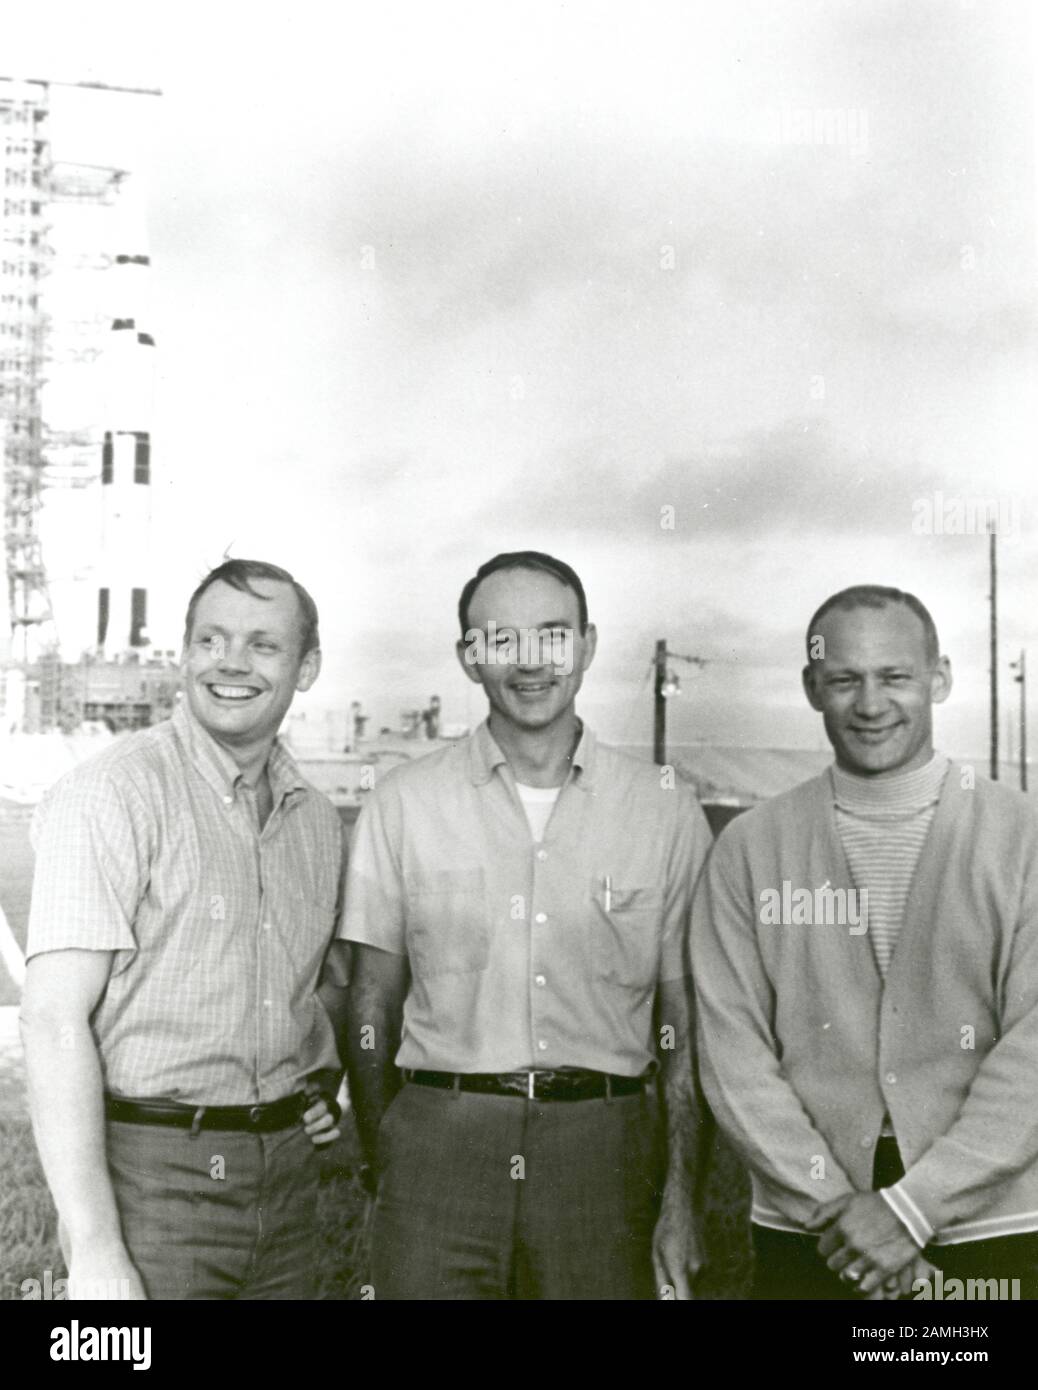 NASA Apollo 11 Flight Crew, Neil A. Armstrong, Kommandant, Michael Collins, Command Module Pilot, und Edwin E. Aldrin Jr. Lunar Module Pilot, in der Nähe des Apollo/Saturn V Space Vehicle im Kennedy Space Center, Merritt Island, Florida, Vereinigte Staaten, 16. Juli 1969. Bild mit freundlicher Genehmigung der NASA. () Stockfoto